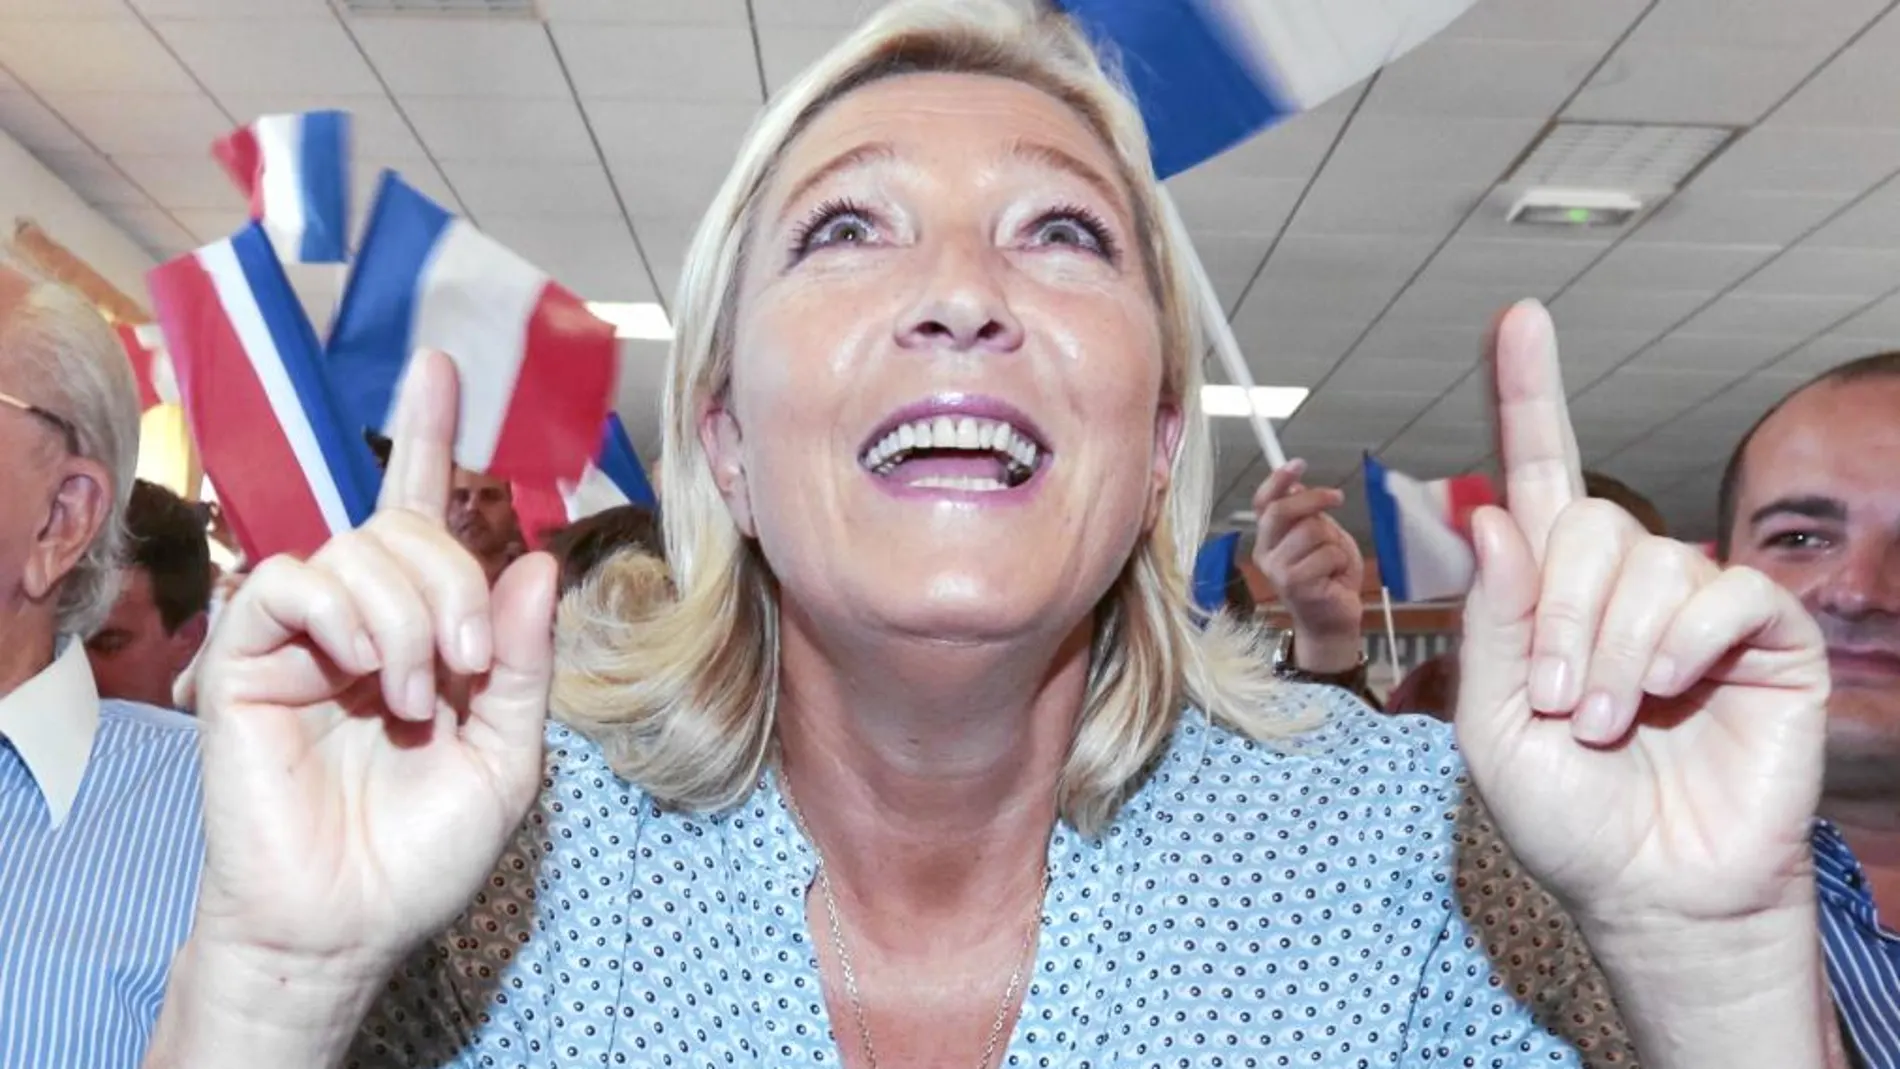 La líder del Frente Nacional, Marine Le Pen, gesticula en un acto político, ayer, en Frejus